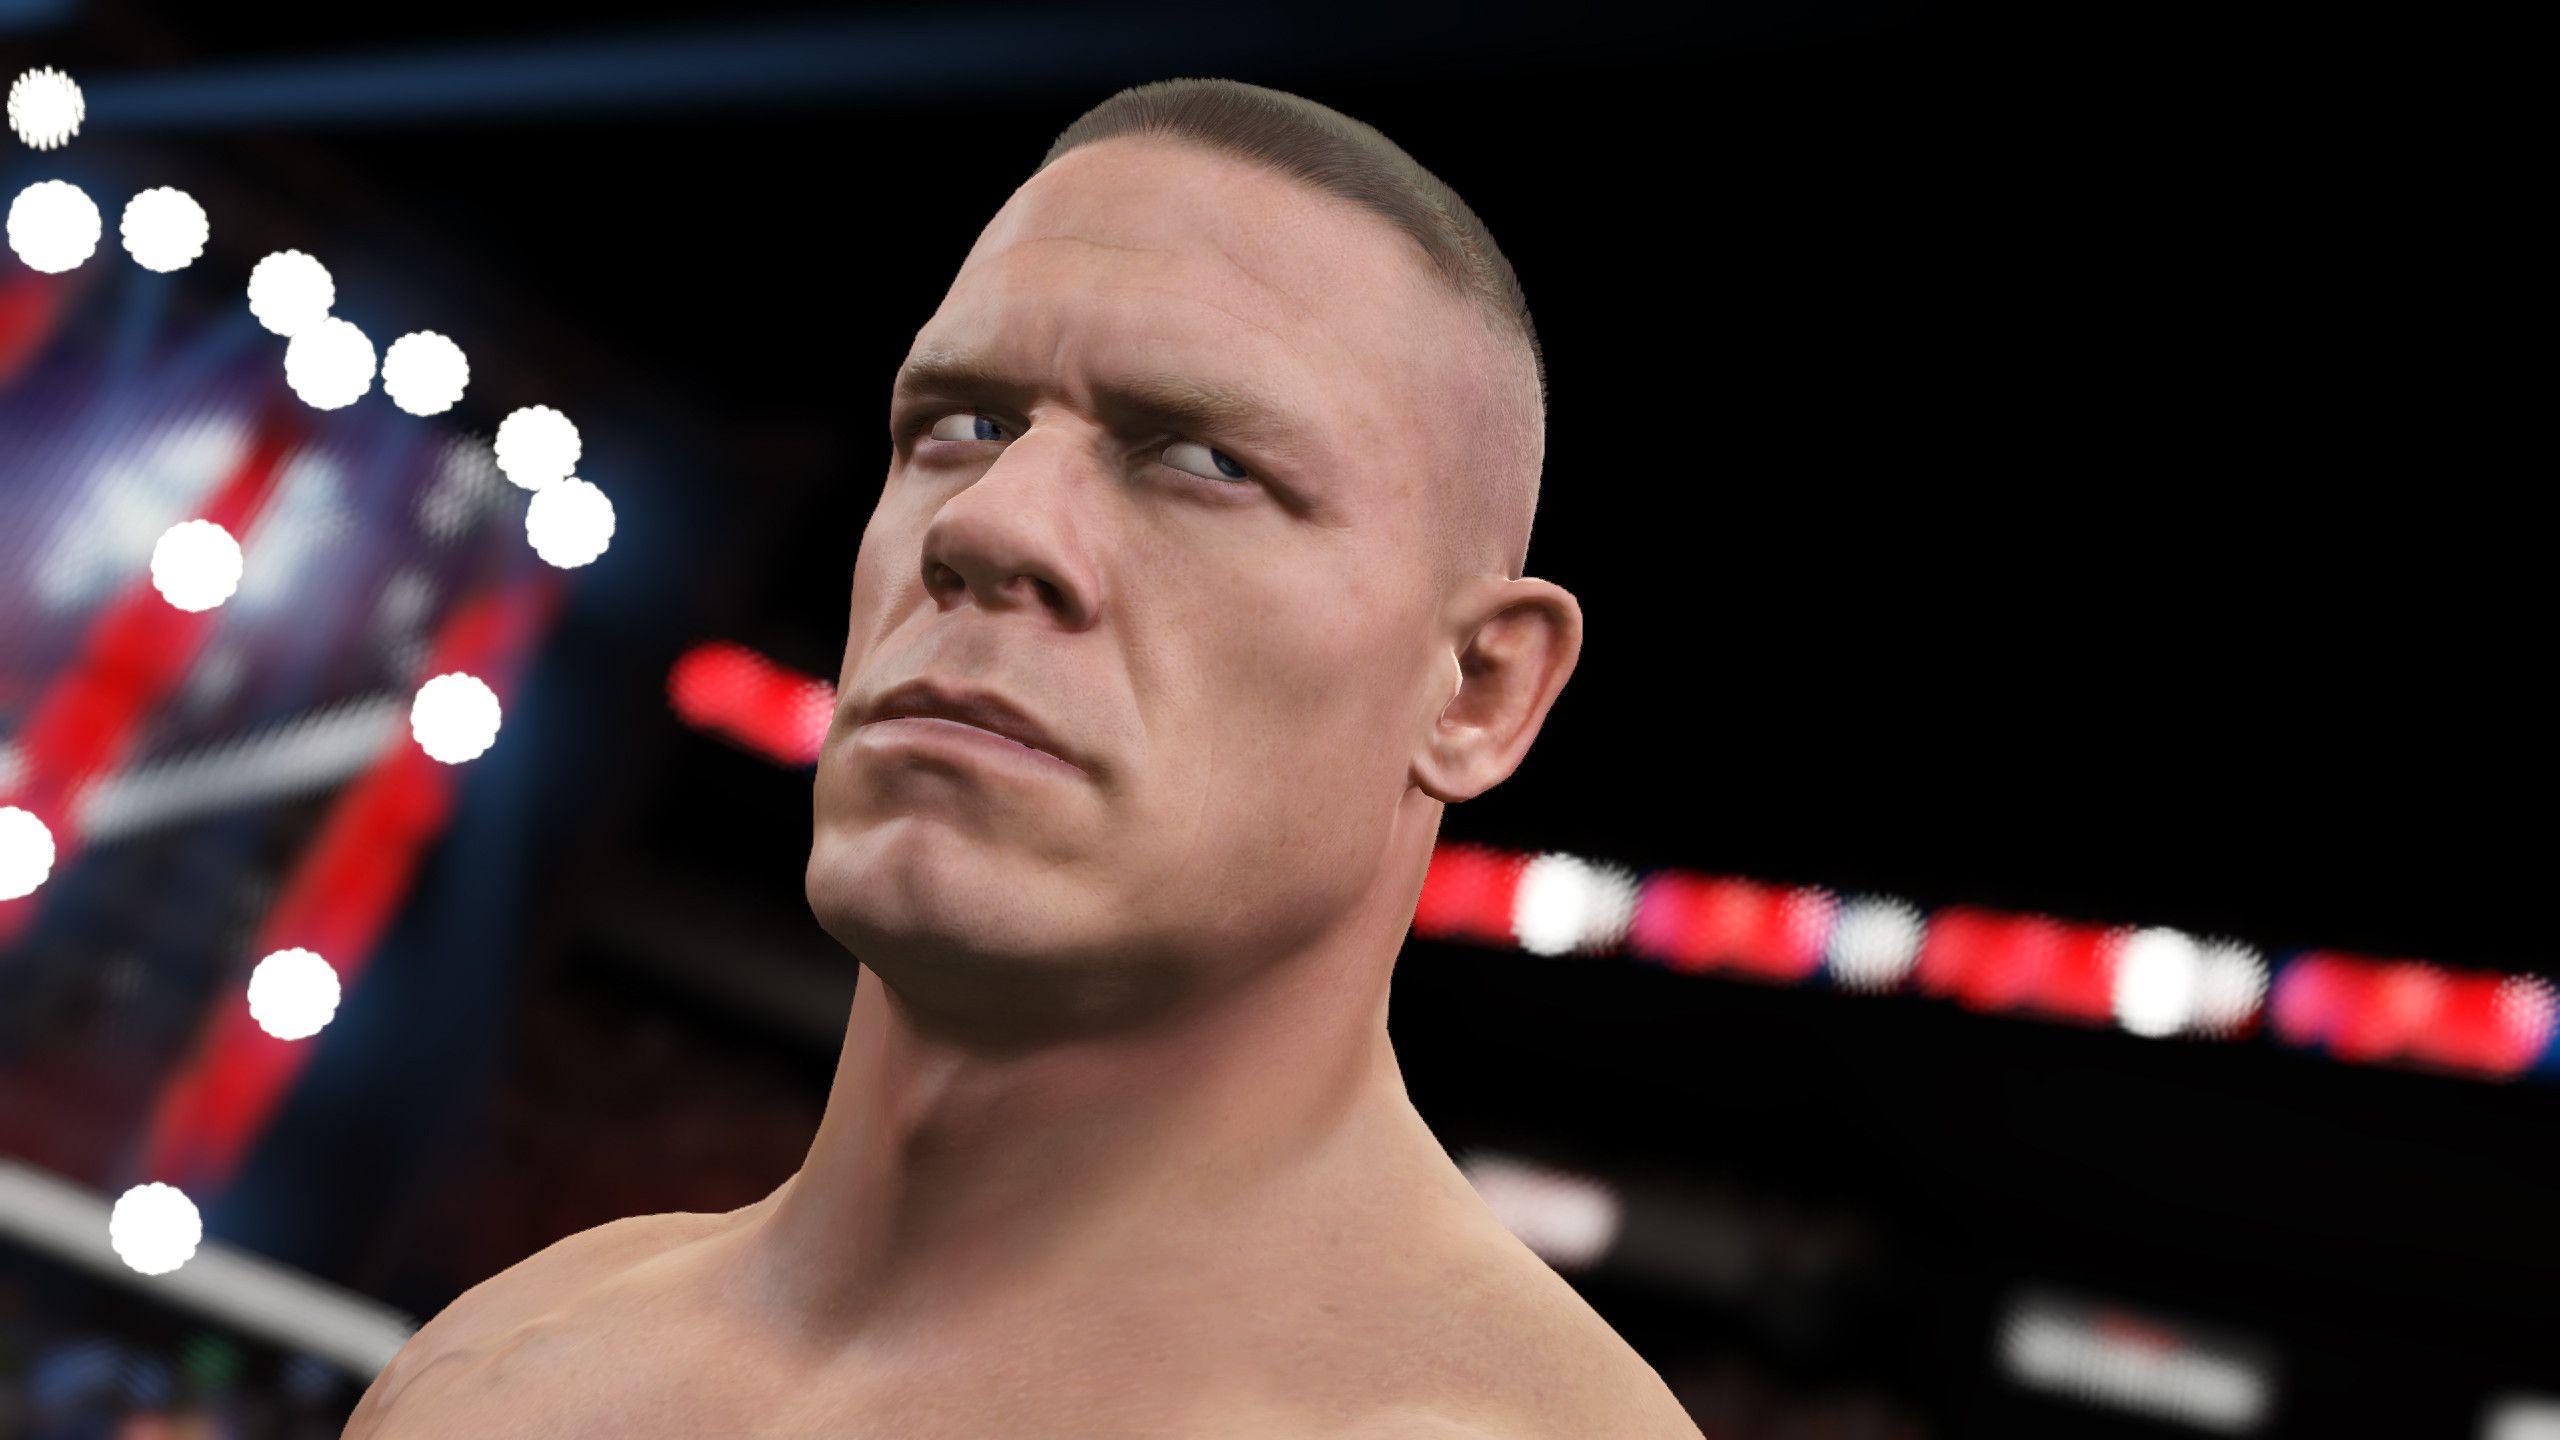 New Screenshot with John Cena